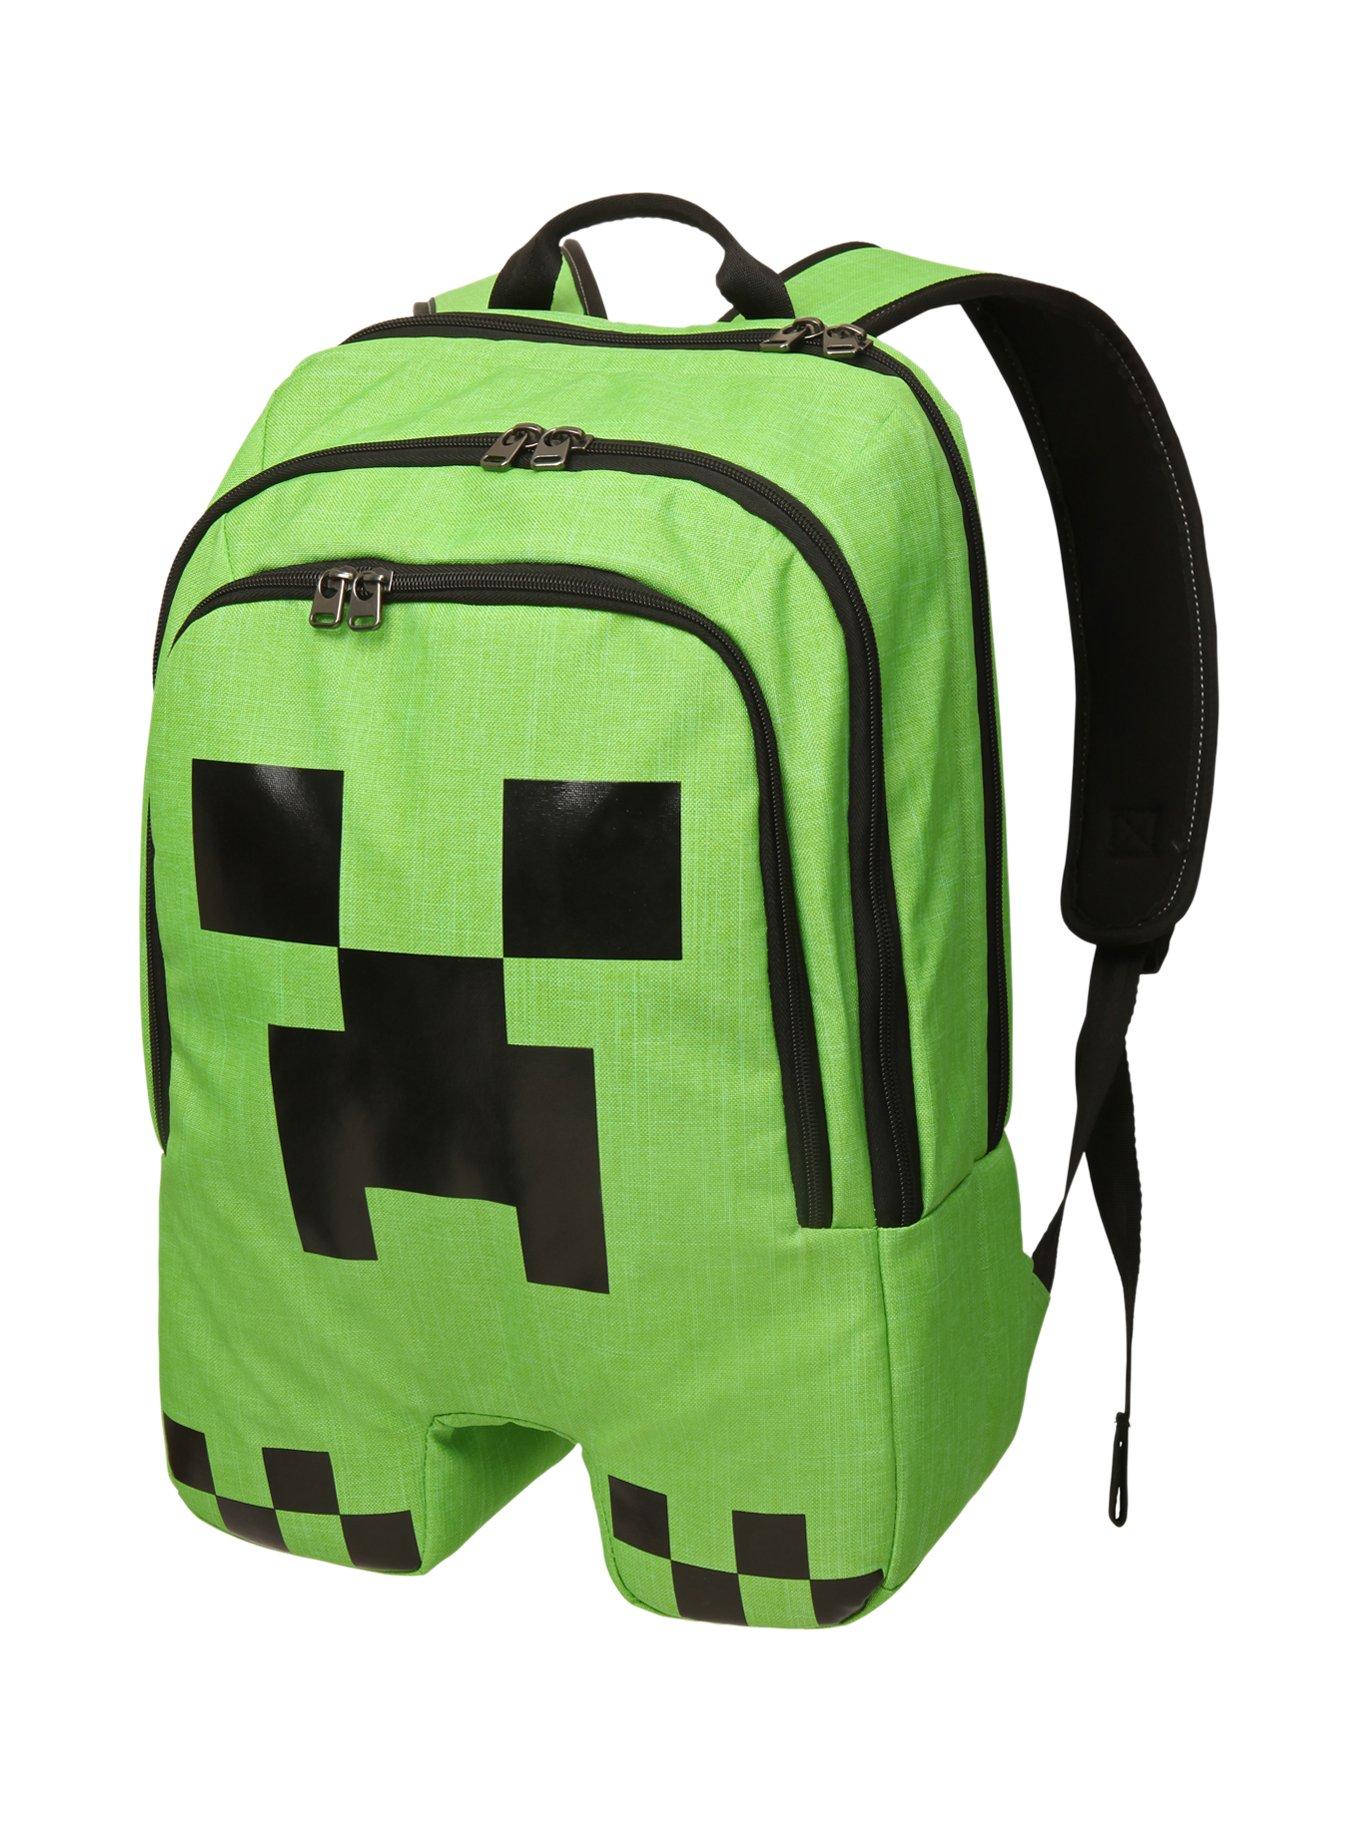 Minecraft Creeper Backpack, , hi-res